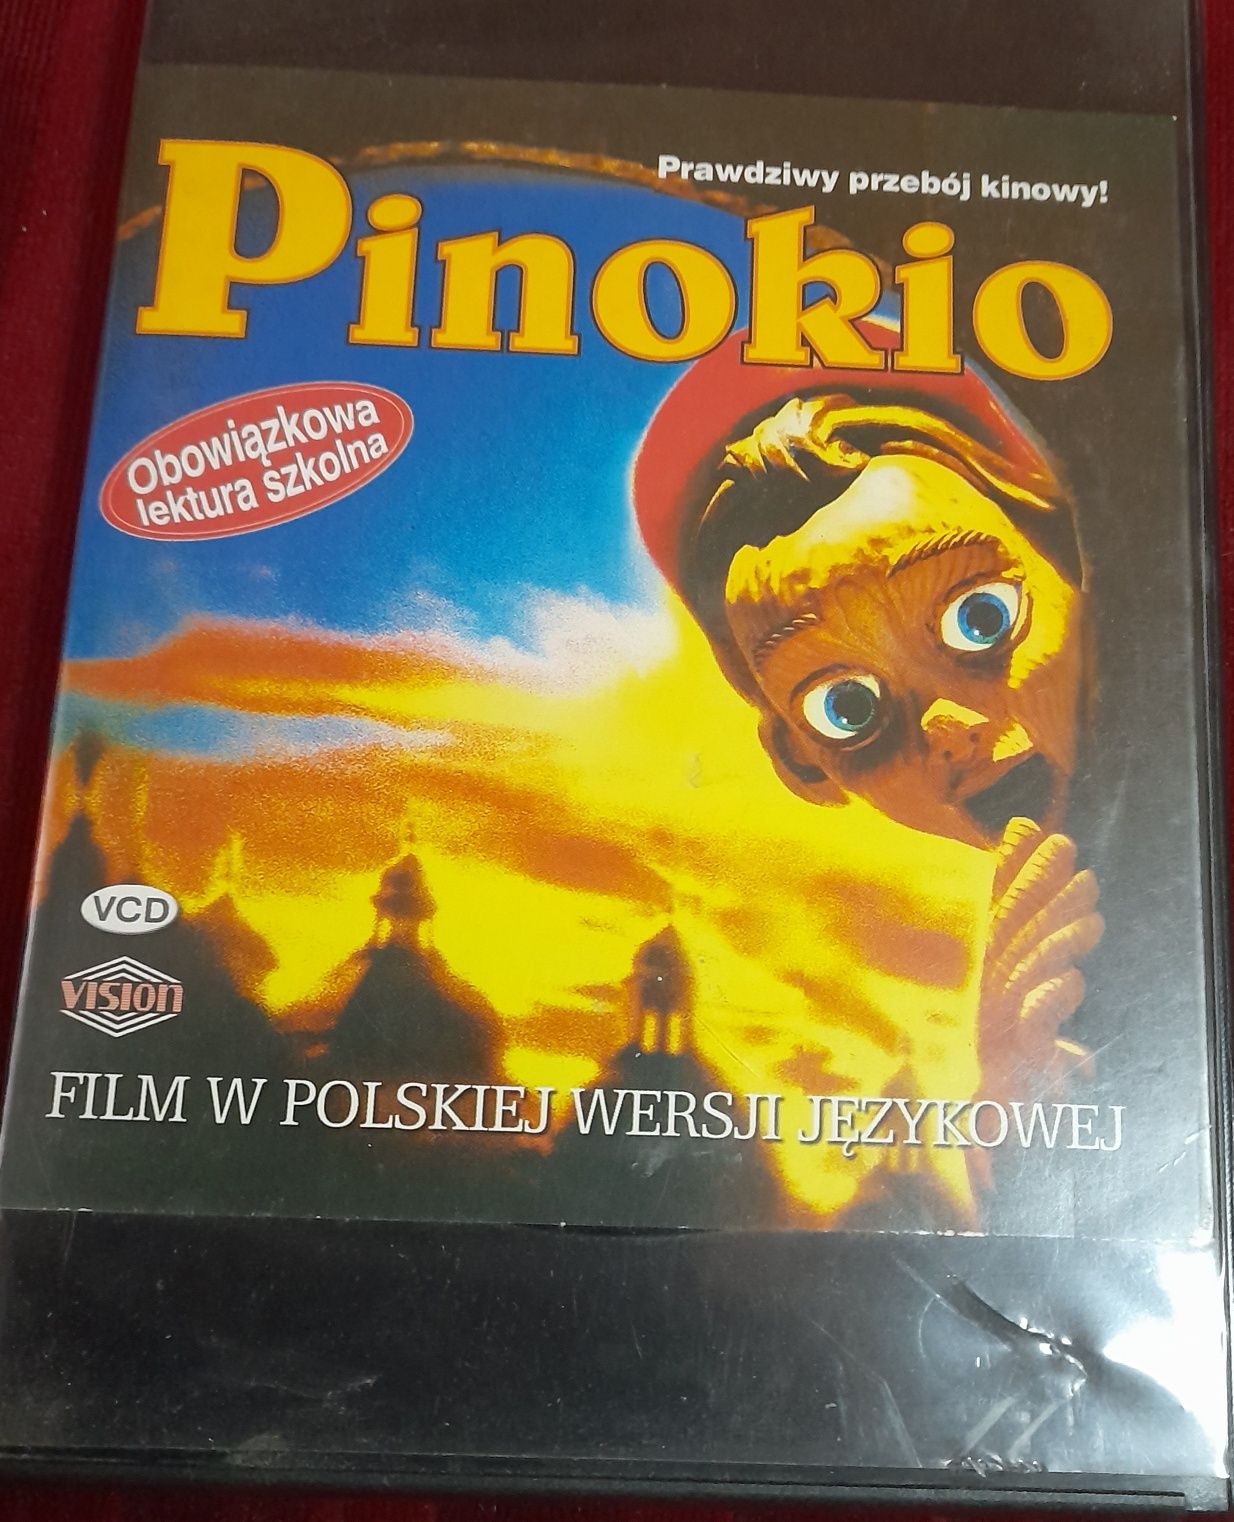 Pinokio - film w polskiej wersji językowej na płycie VCD